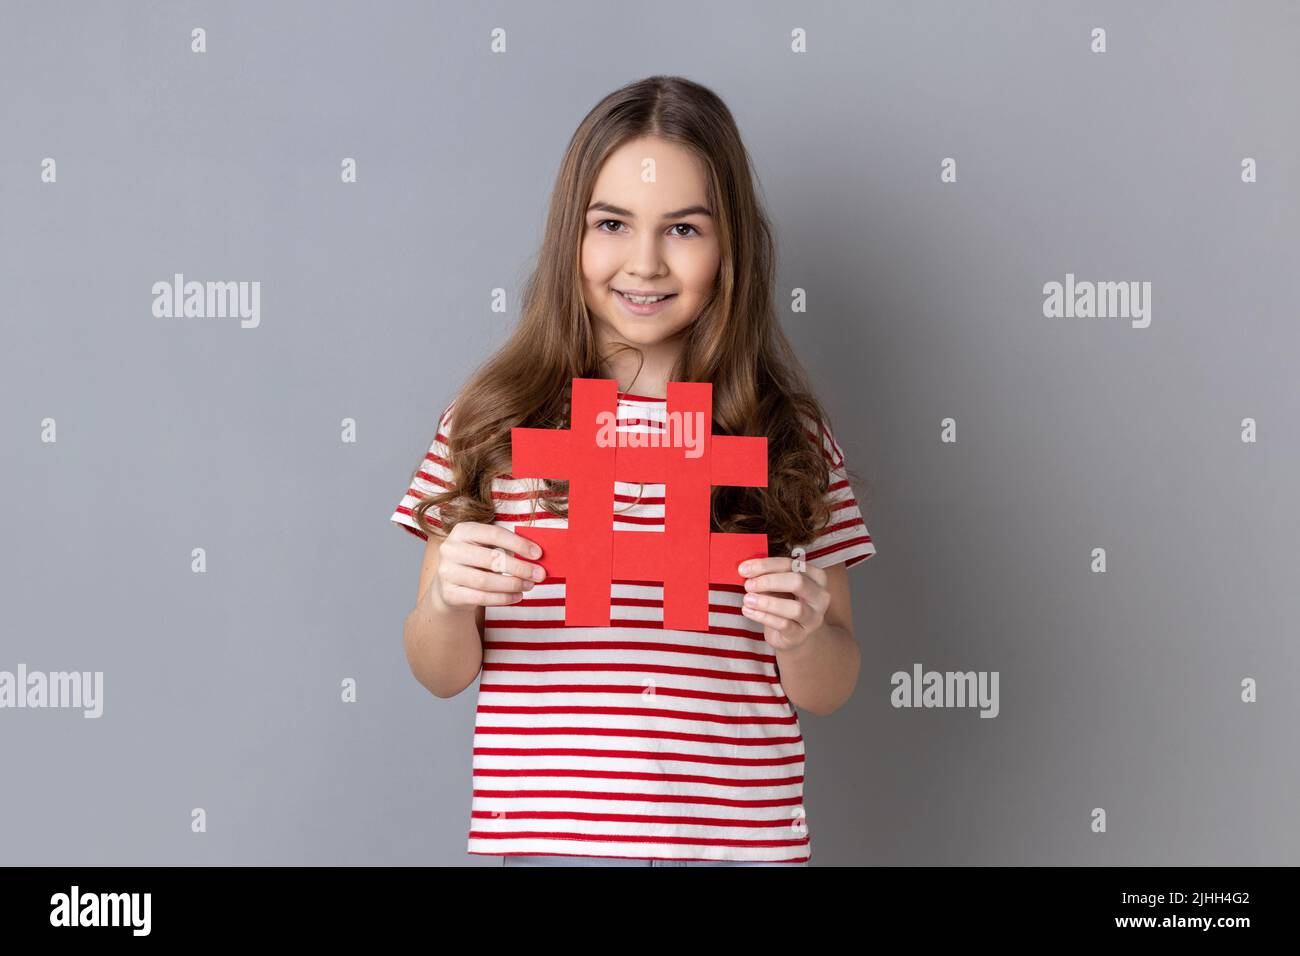 Retrato de niña feliz con camiseta a rayas que sostiene hashtag símbolo, la promoción de tema viral en la red social, marcado de tendencias de blog. Estudio de interior grabado aislado sobre fondo gris. Foto de stock